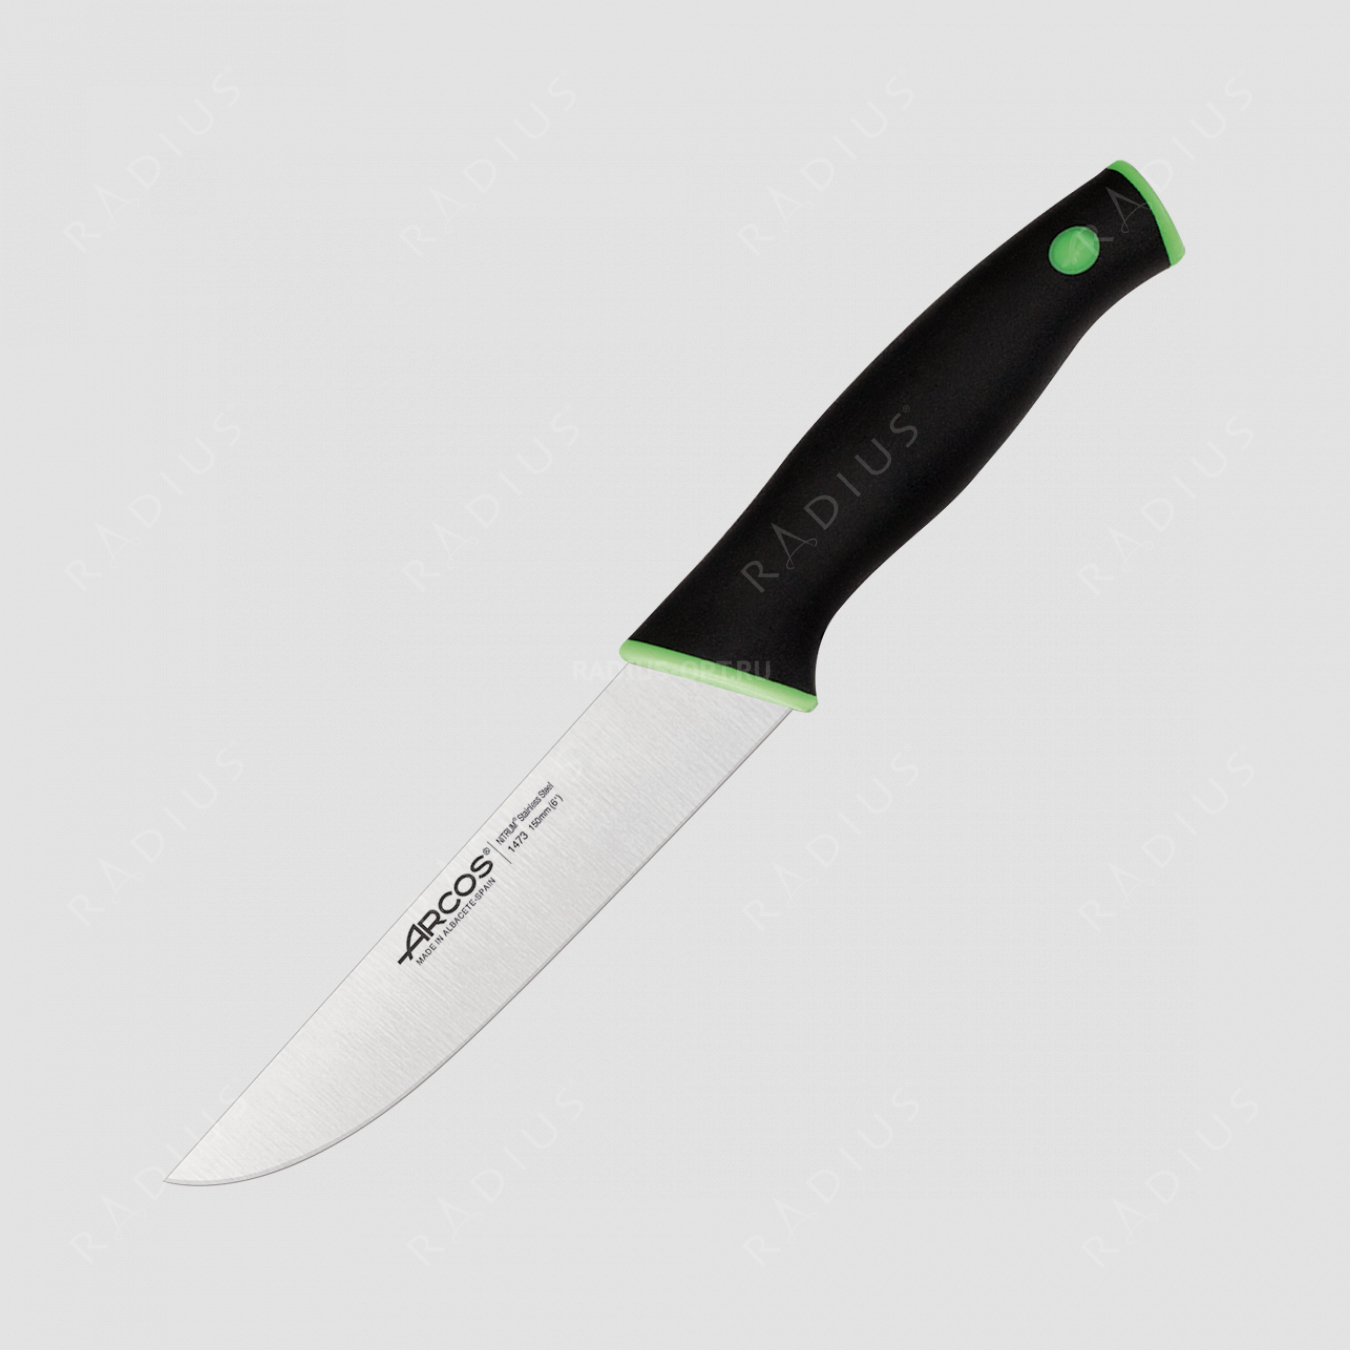 Нож кухонный 15 см, серия Duo, ARCOS, Испания